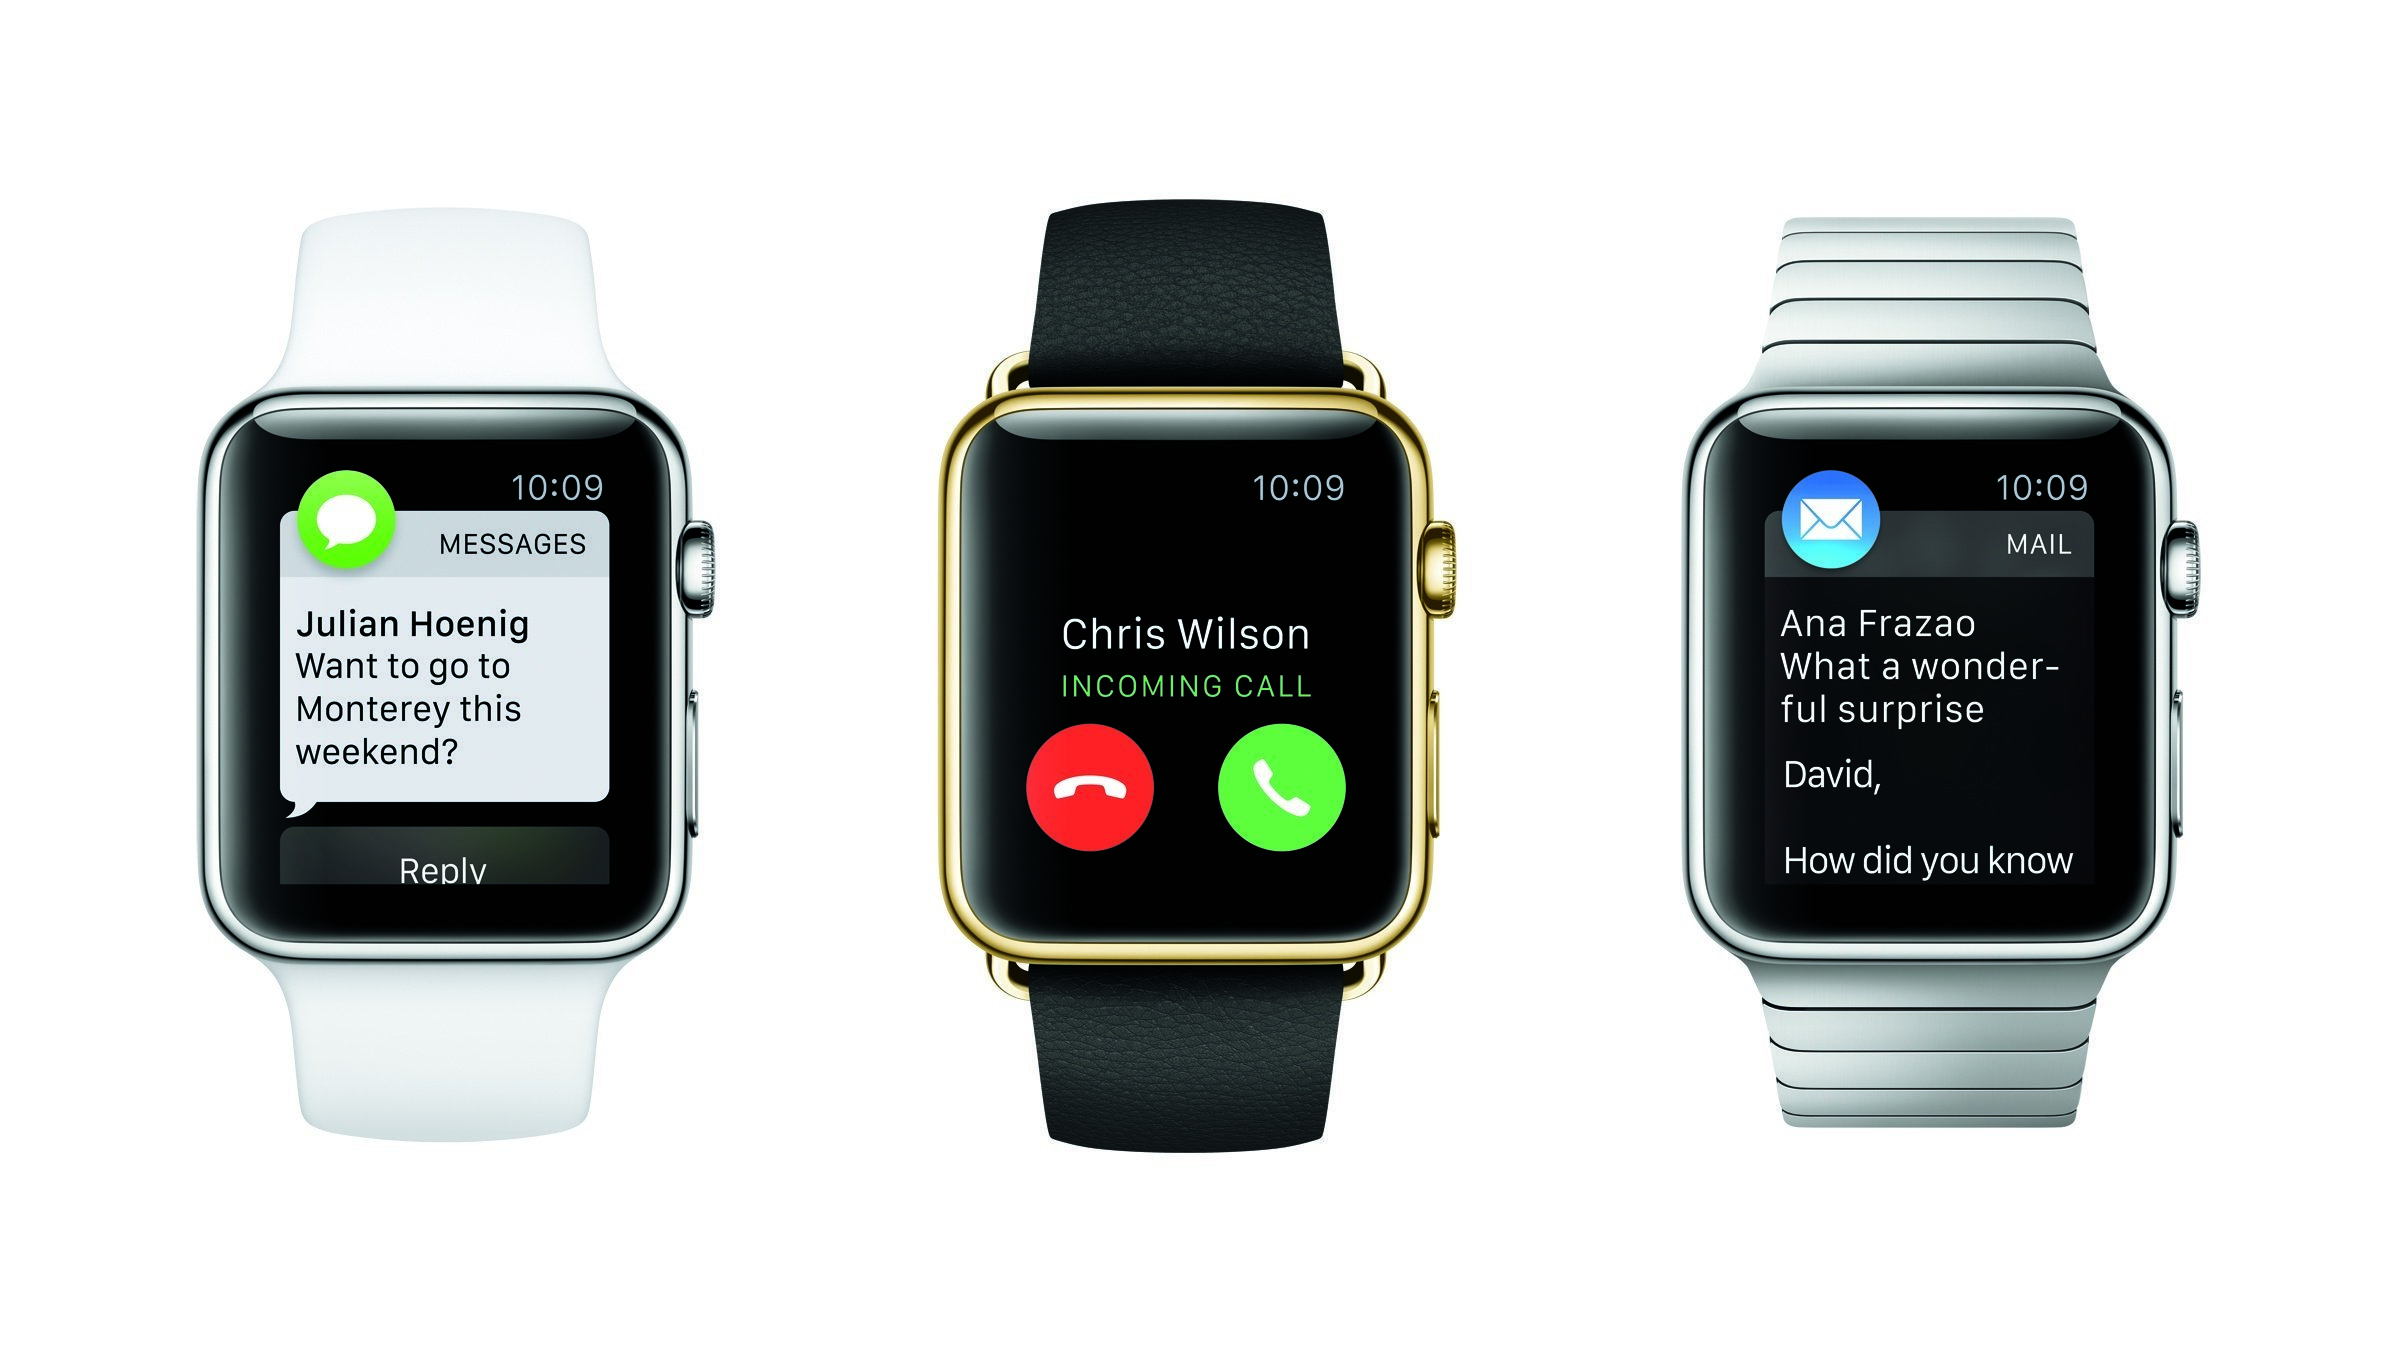 Μετά την επίσημη πρώτη: Τι μπορεί να κάνει το ρολόι της Apple;